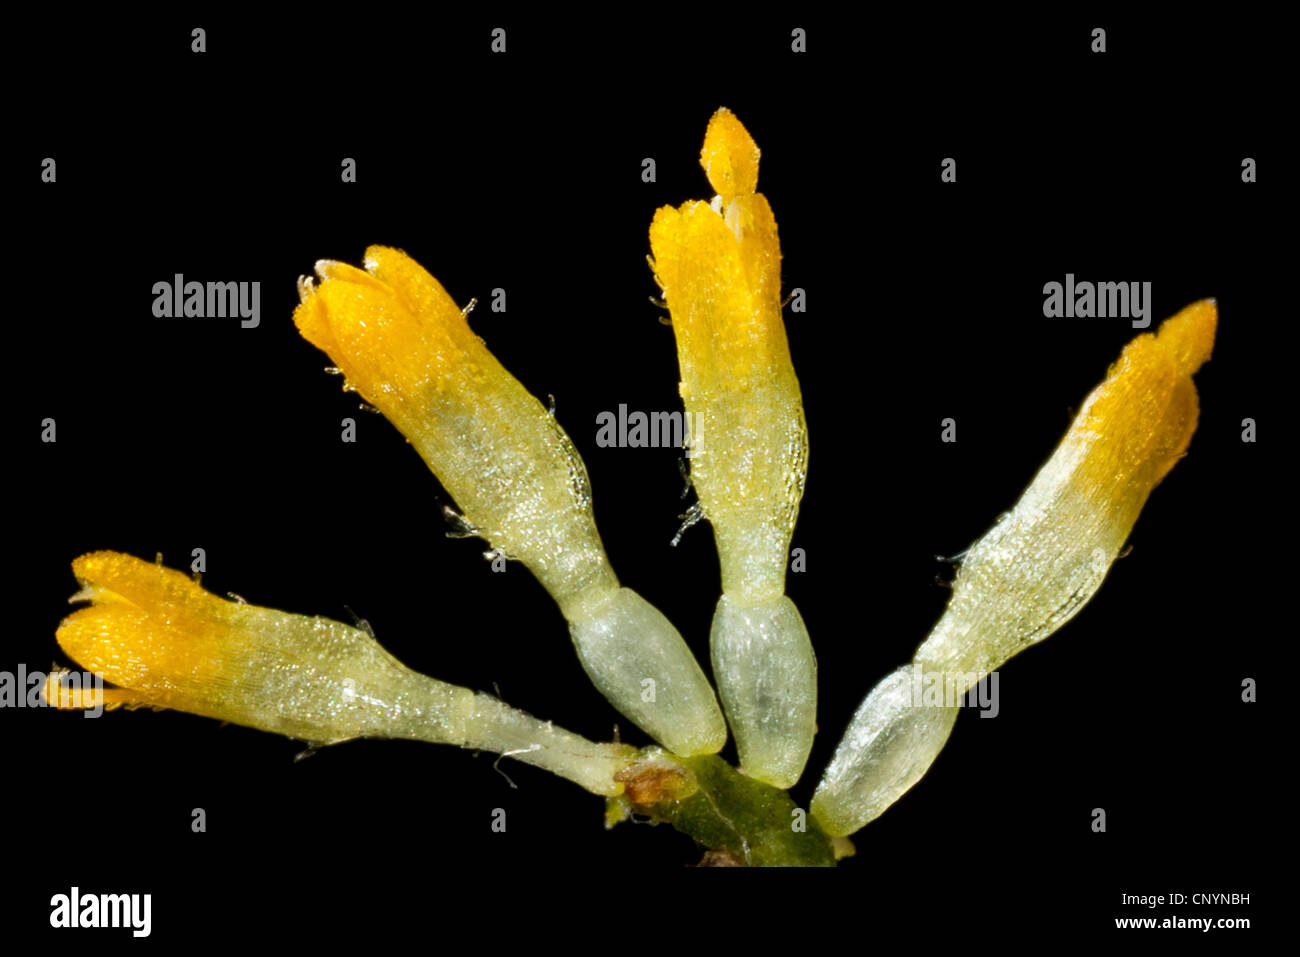 Marguerite commune, pelouse, Daisy Daisy (Anglais), Bellis perennis fleurs tubulaires isolés, Allemagne Banque D'Images